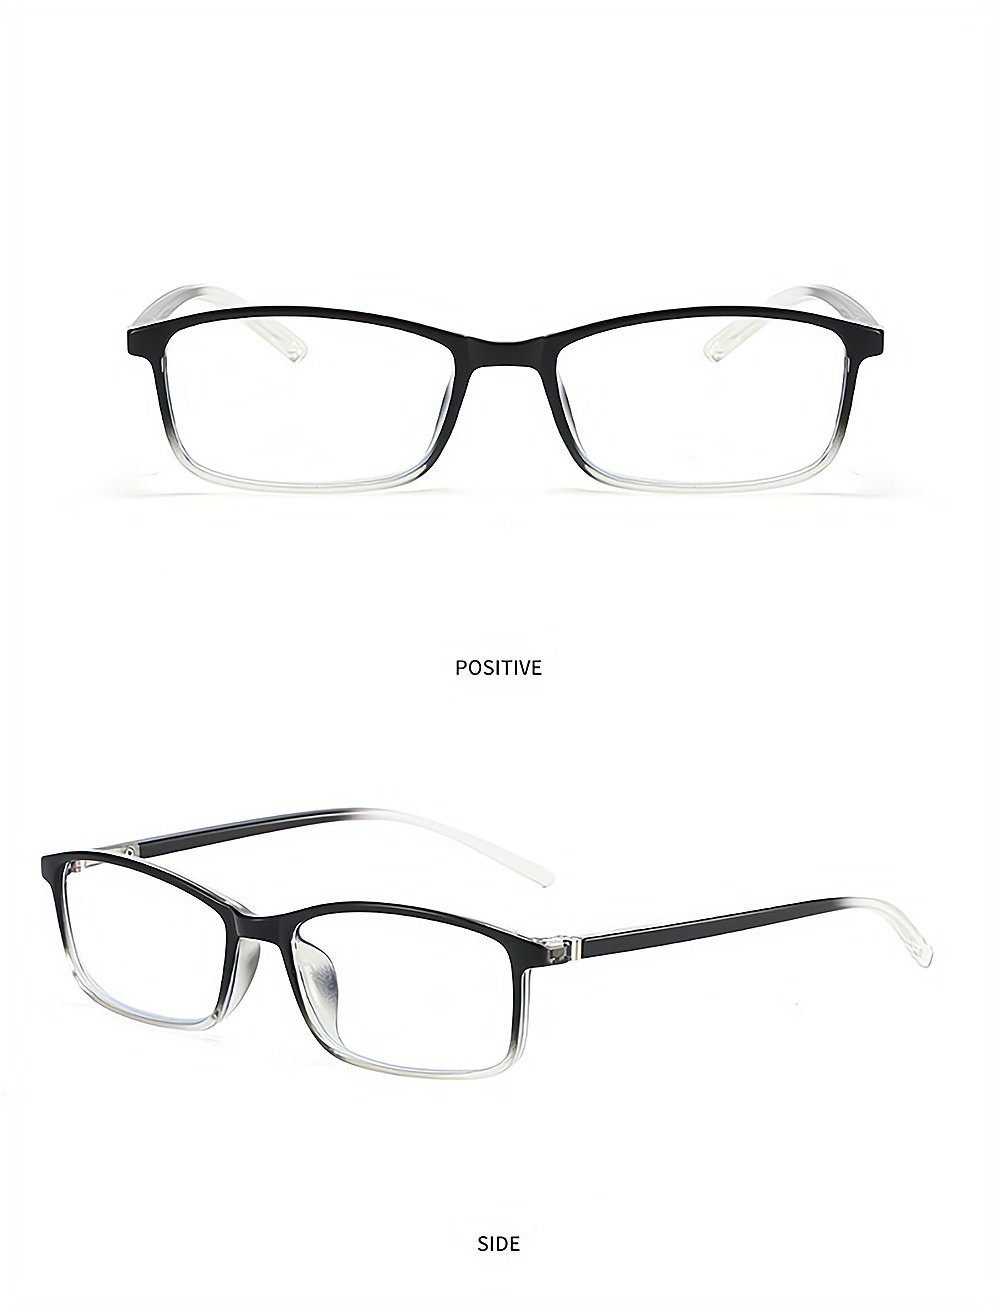 PACIEA Lesebrille Mode bedruckte Rahmen anti blaue presbyopische Gläser weiß | Lesebrillen